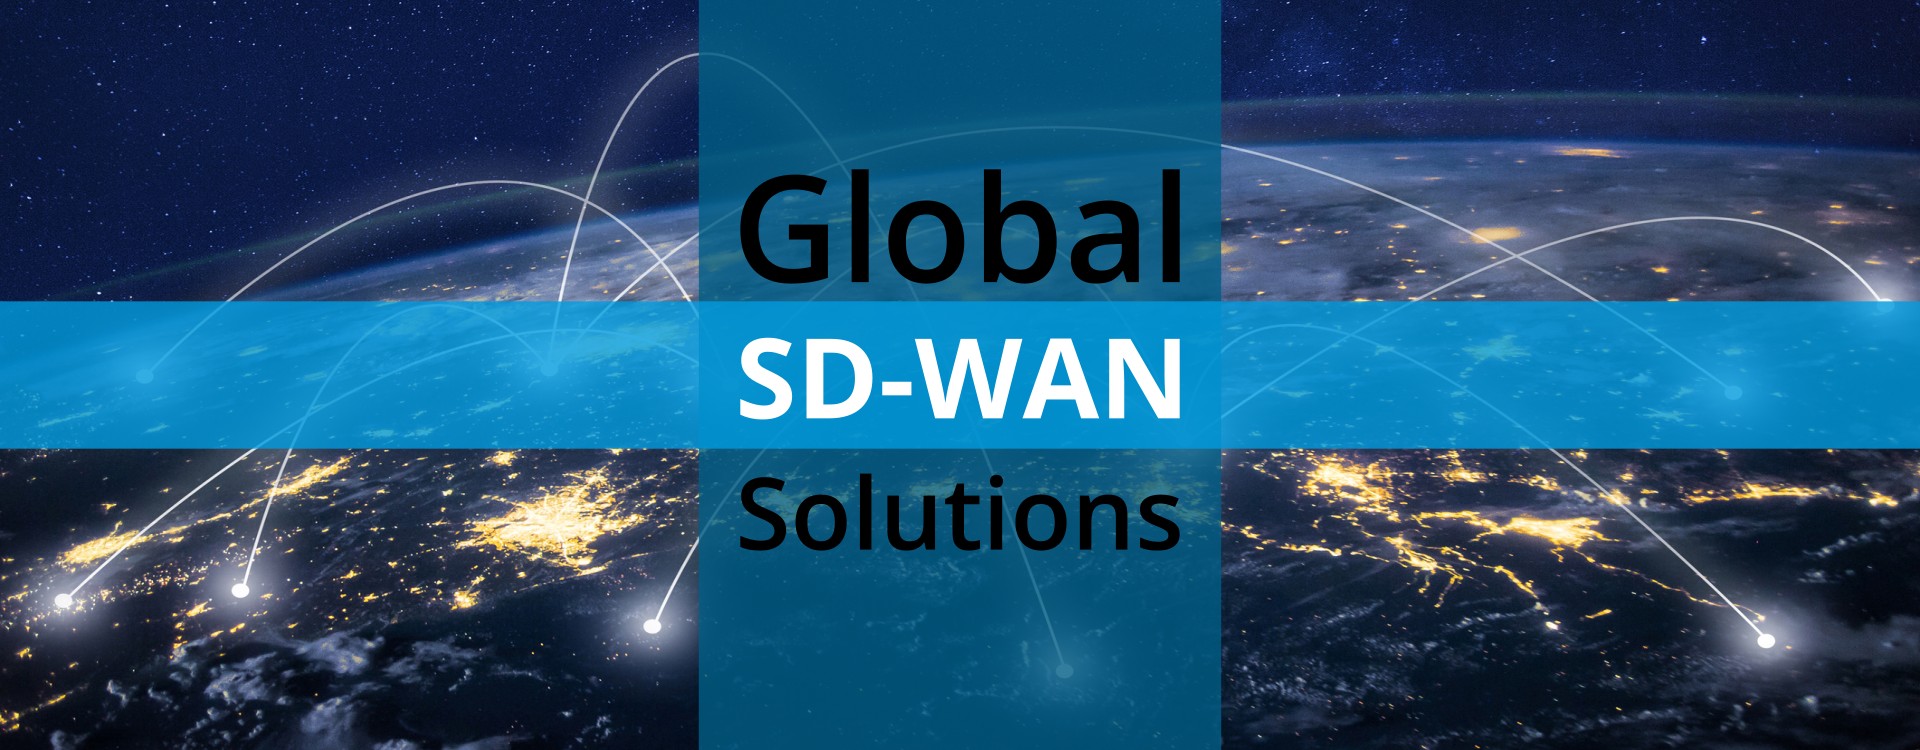 Ecessa global sdwan solutions banner